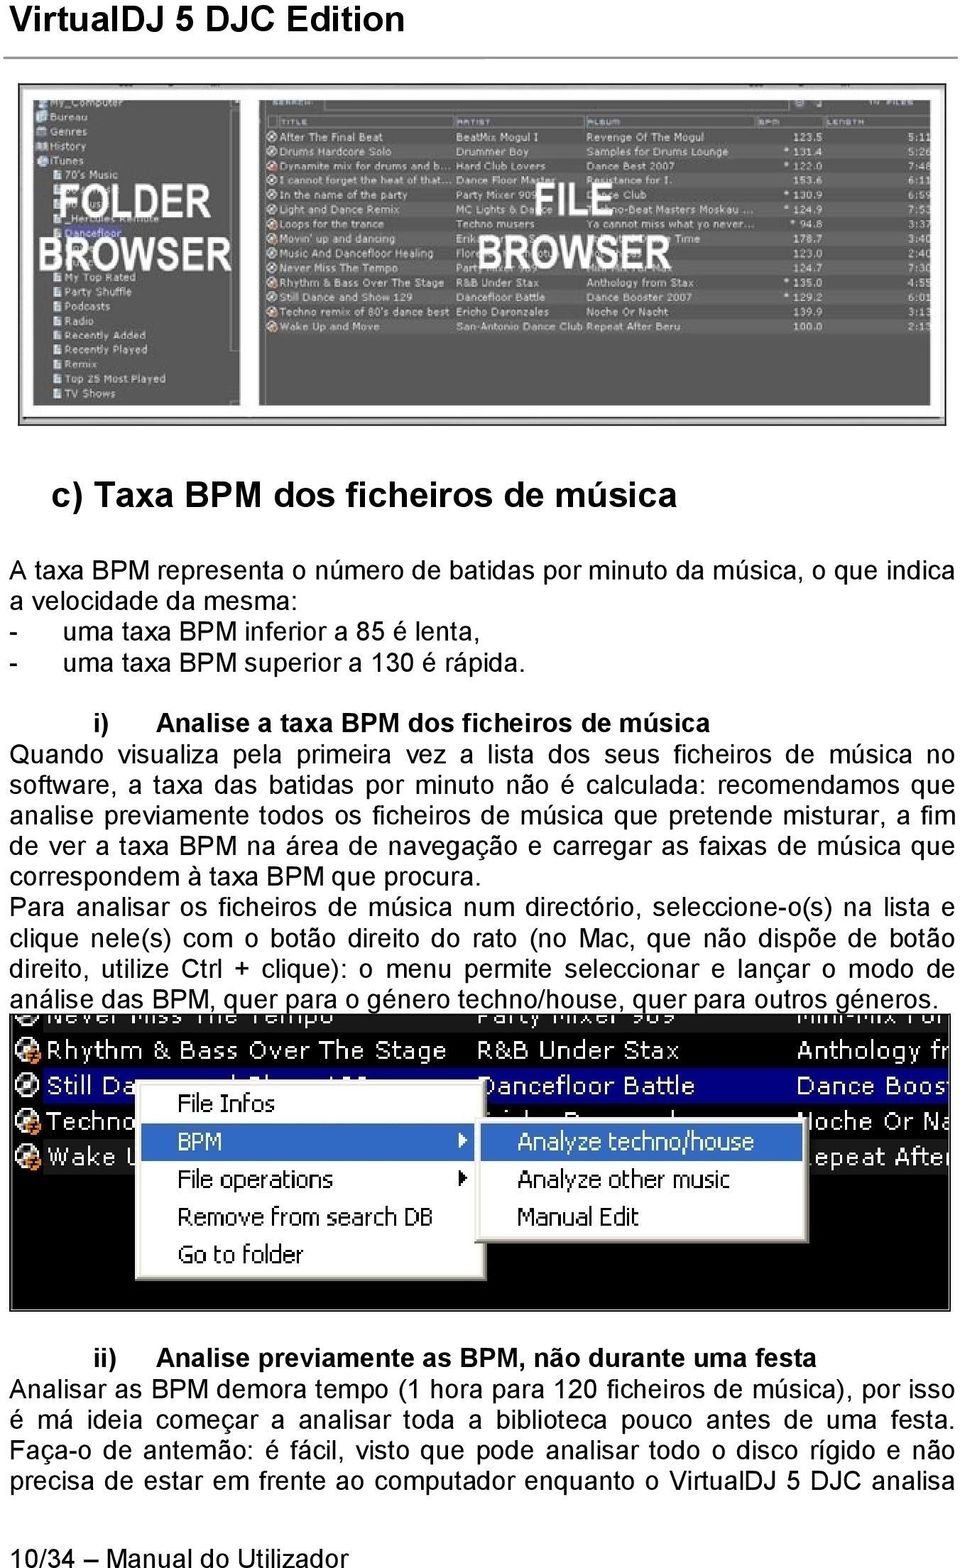 i) Analise a taxa BPM dos ficheiros de música Quando visualiza pela primeira vez a lista dos seus ficheiros de música no software, a taxa das batidas por minuto não é calculada: recomendamos que